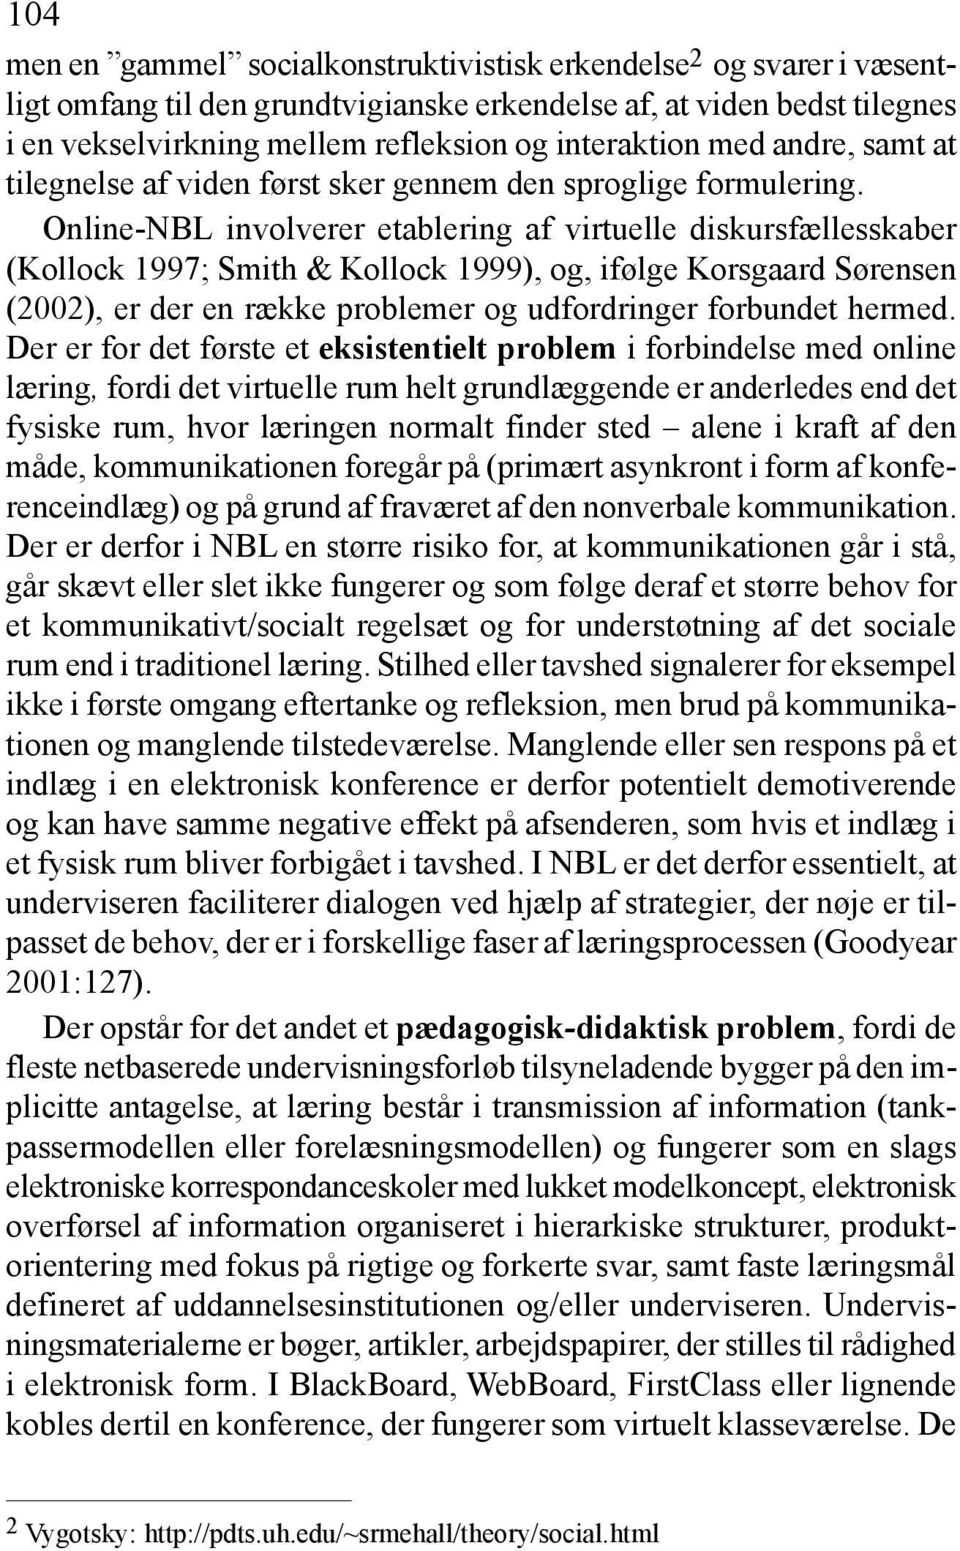 Online-NBL involverer etablering af virtuelle diskursfællesskaber (Kollock 1997; Smith & Kollock 1999), og, ifølge Korsgaard Sørensen (2002), er der en række problemer og udfordringer forbundet